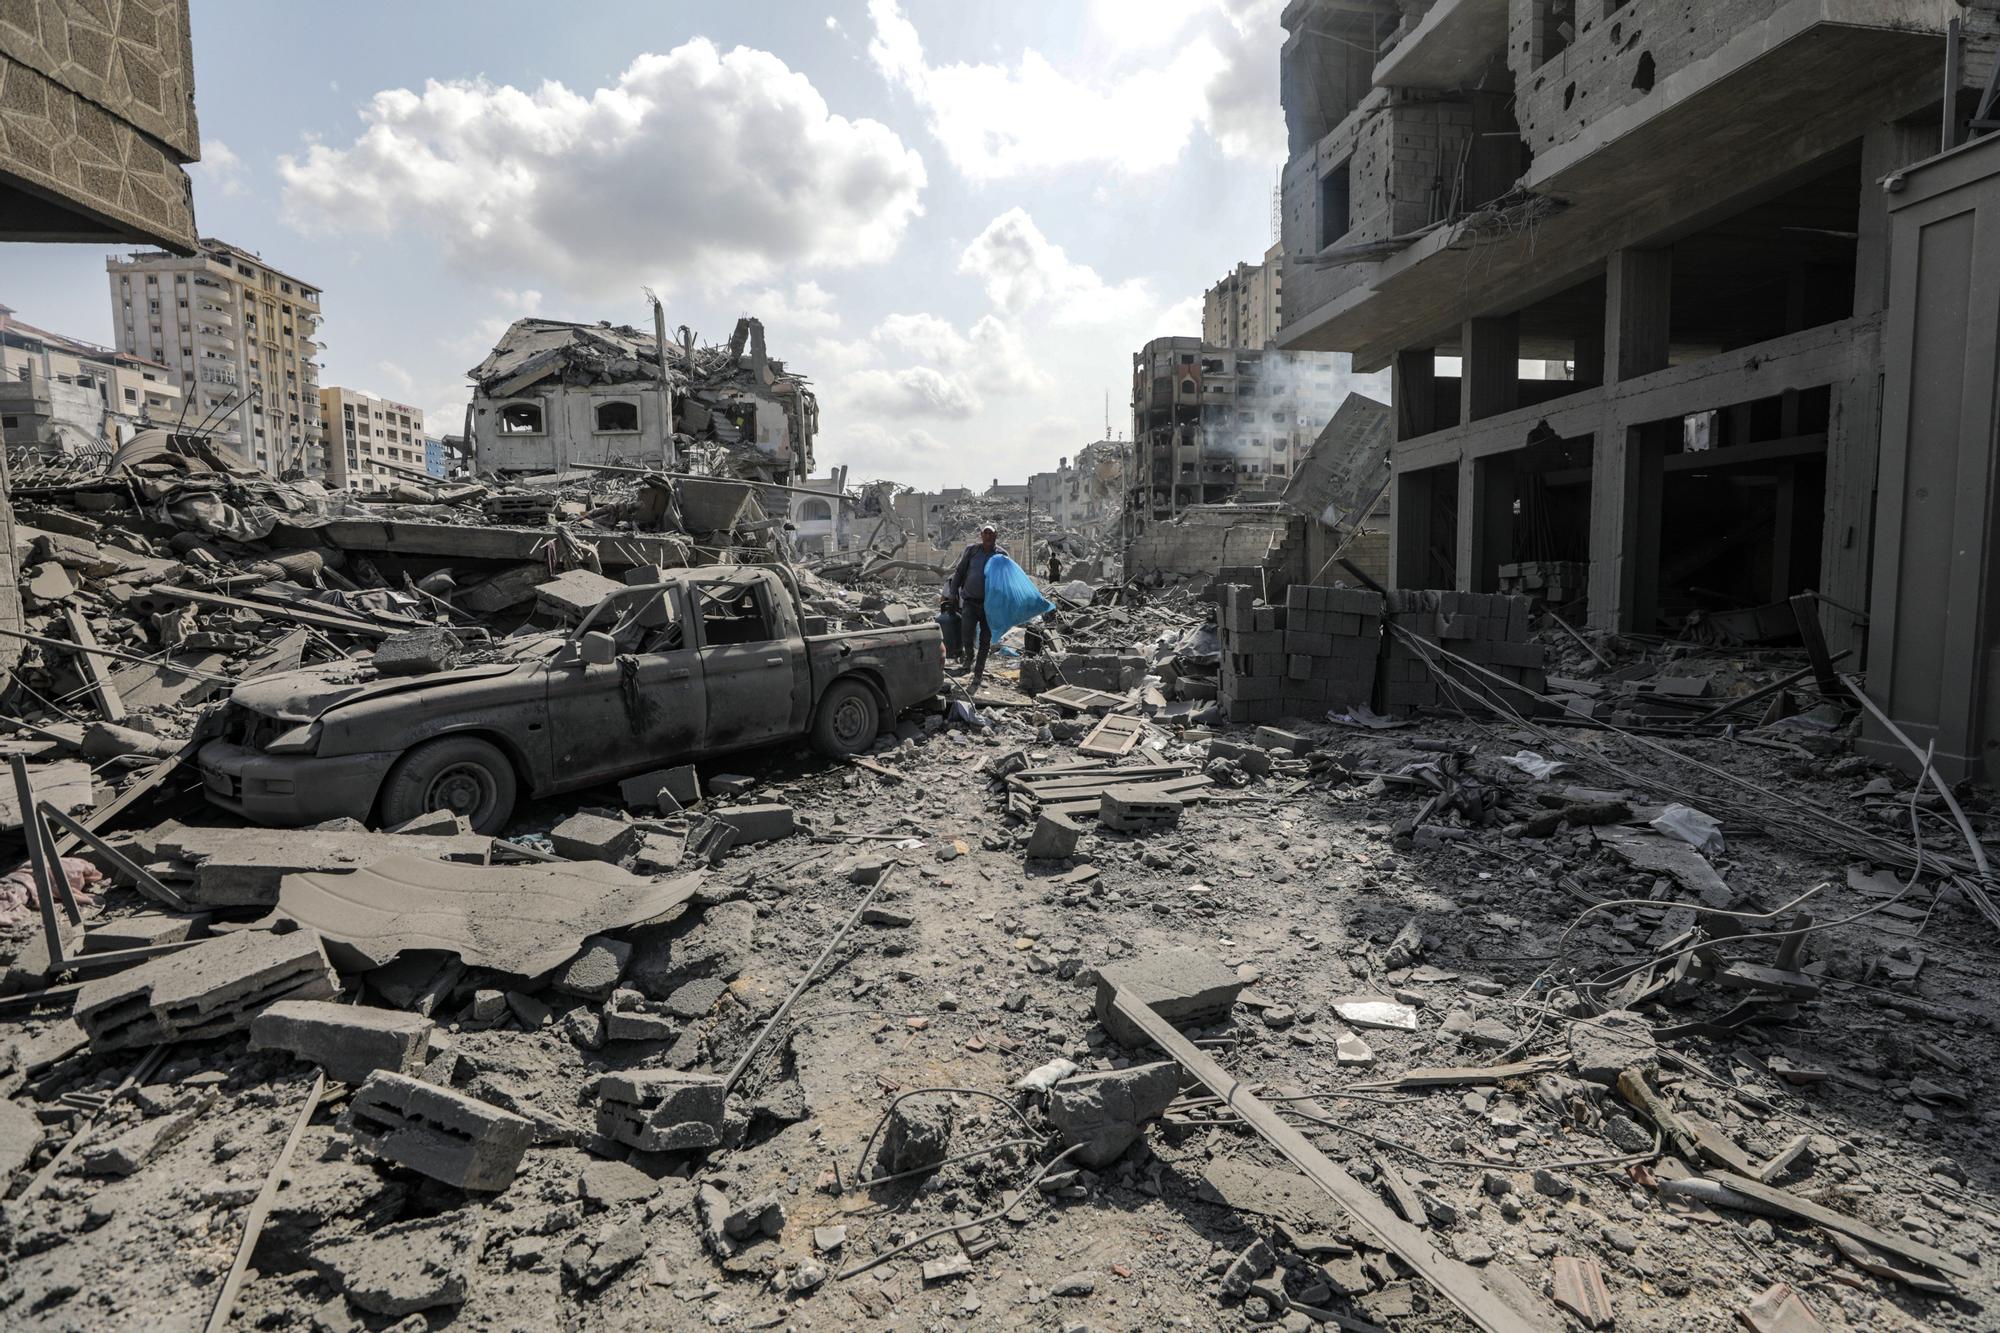 La muerte y destrucción reinan en Gaza